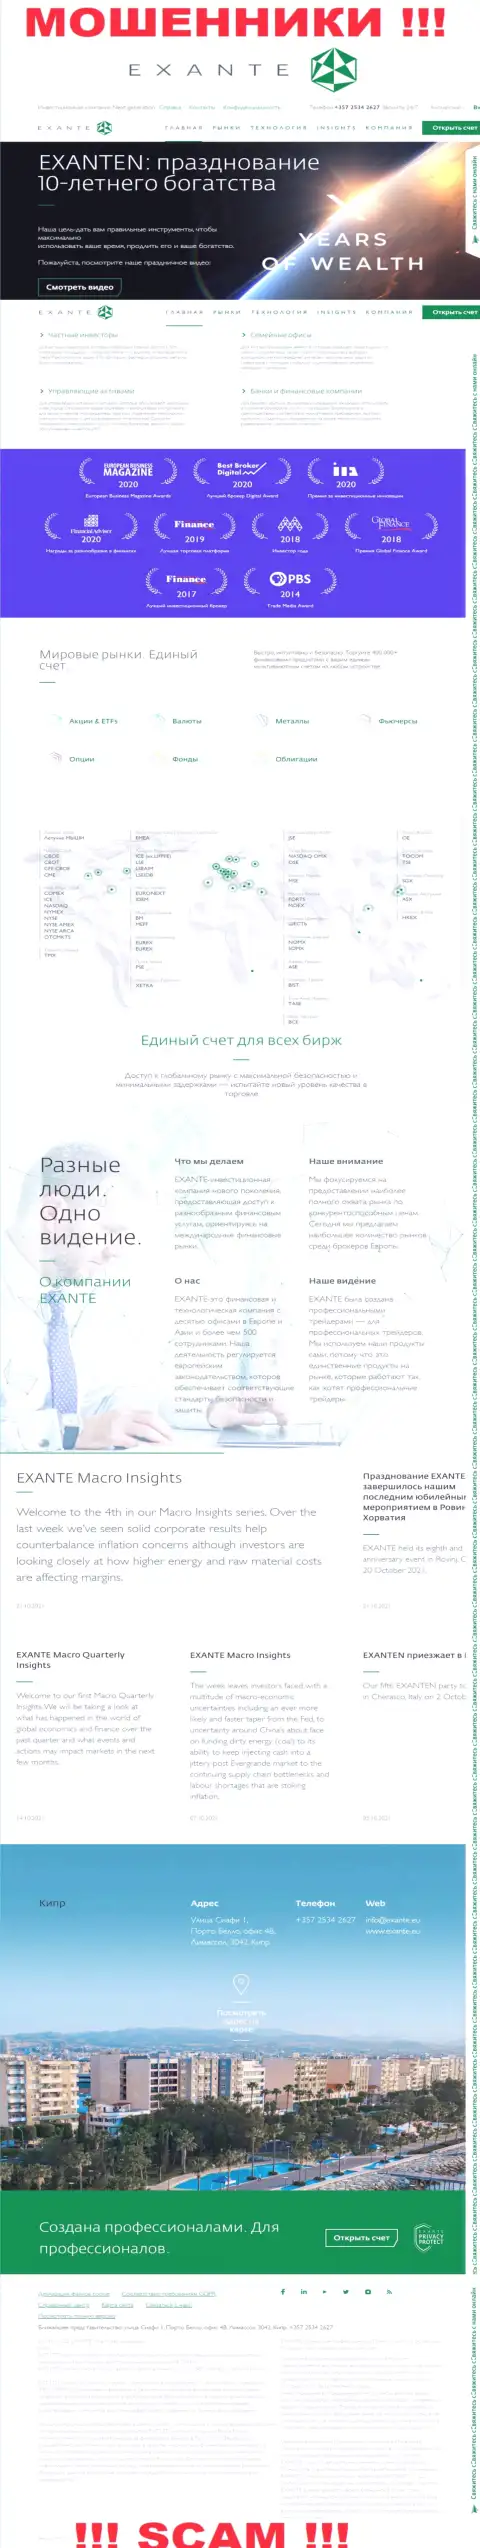 Exante Eu - web-ресурс конторы ЕКЗАНТ, обычная страница шулеров